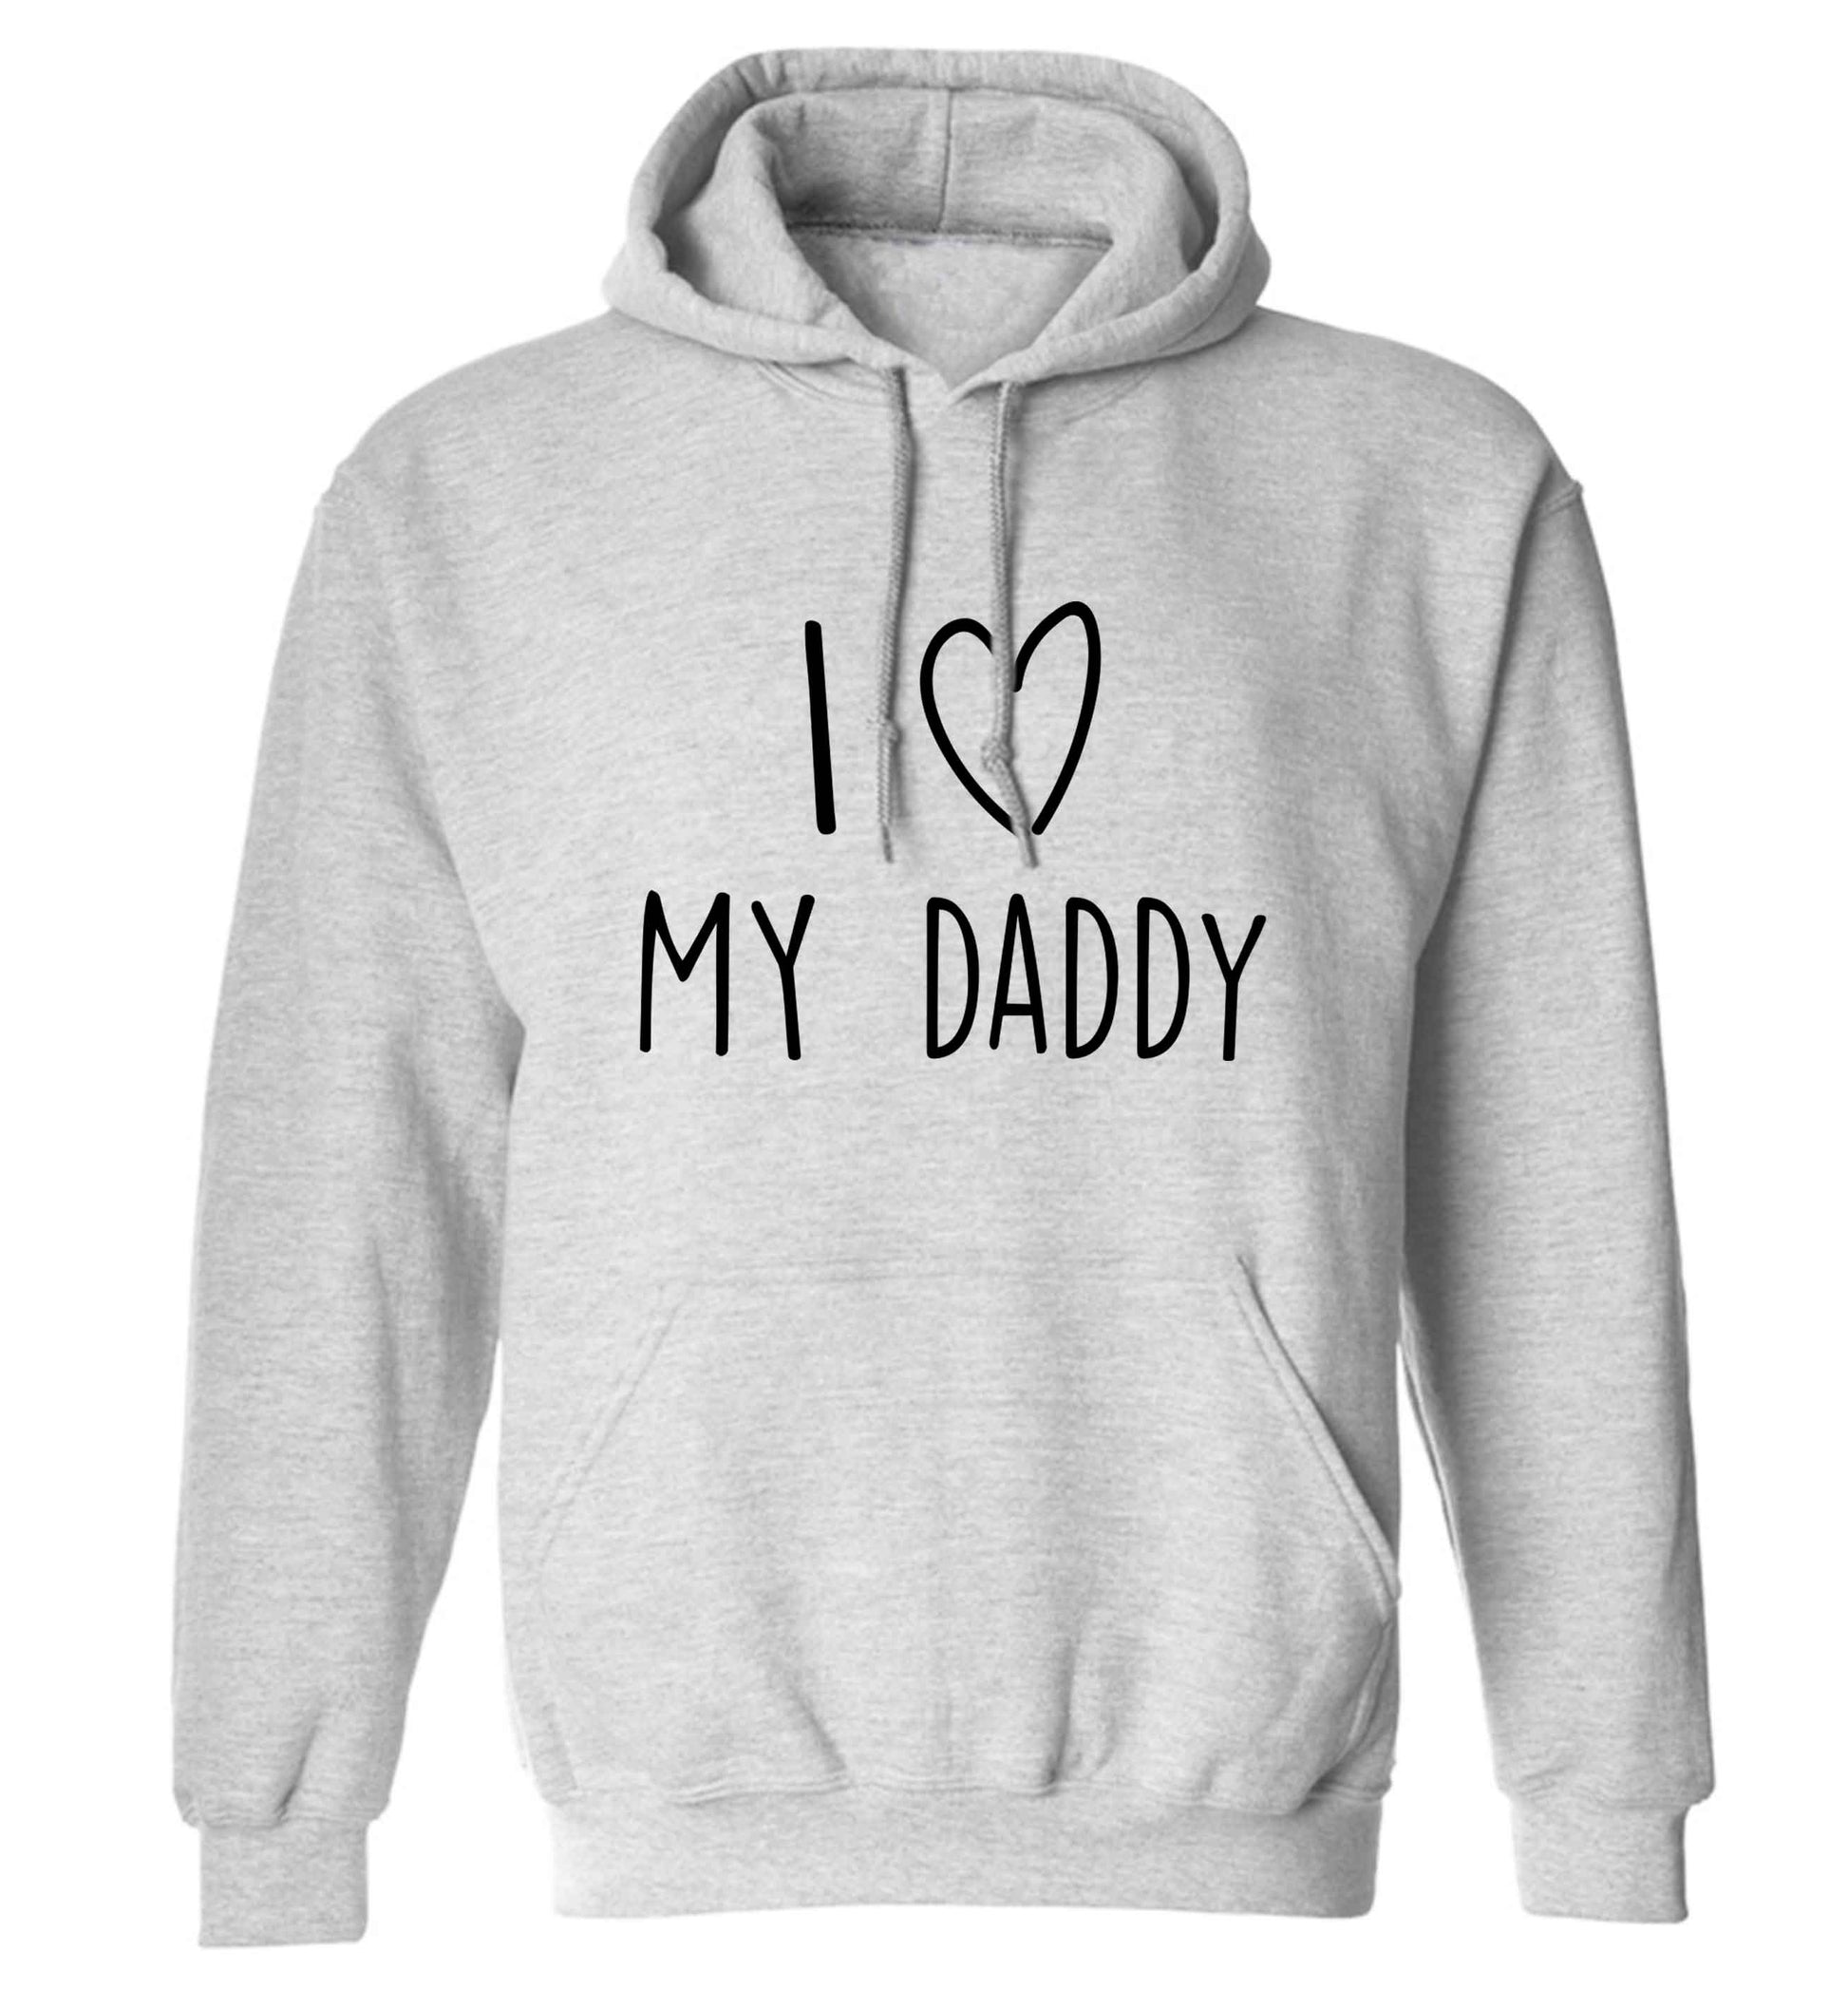 I love my daddy adults unisex grey hoodie 2XL